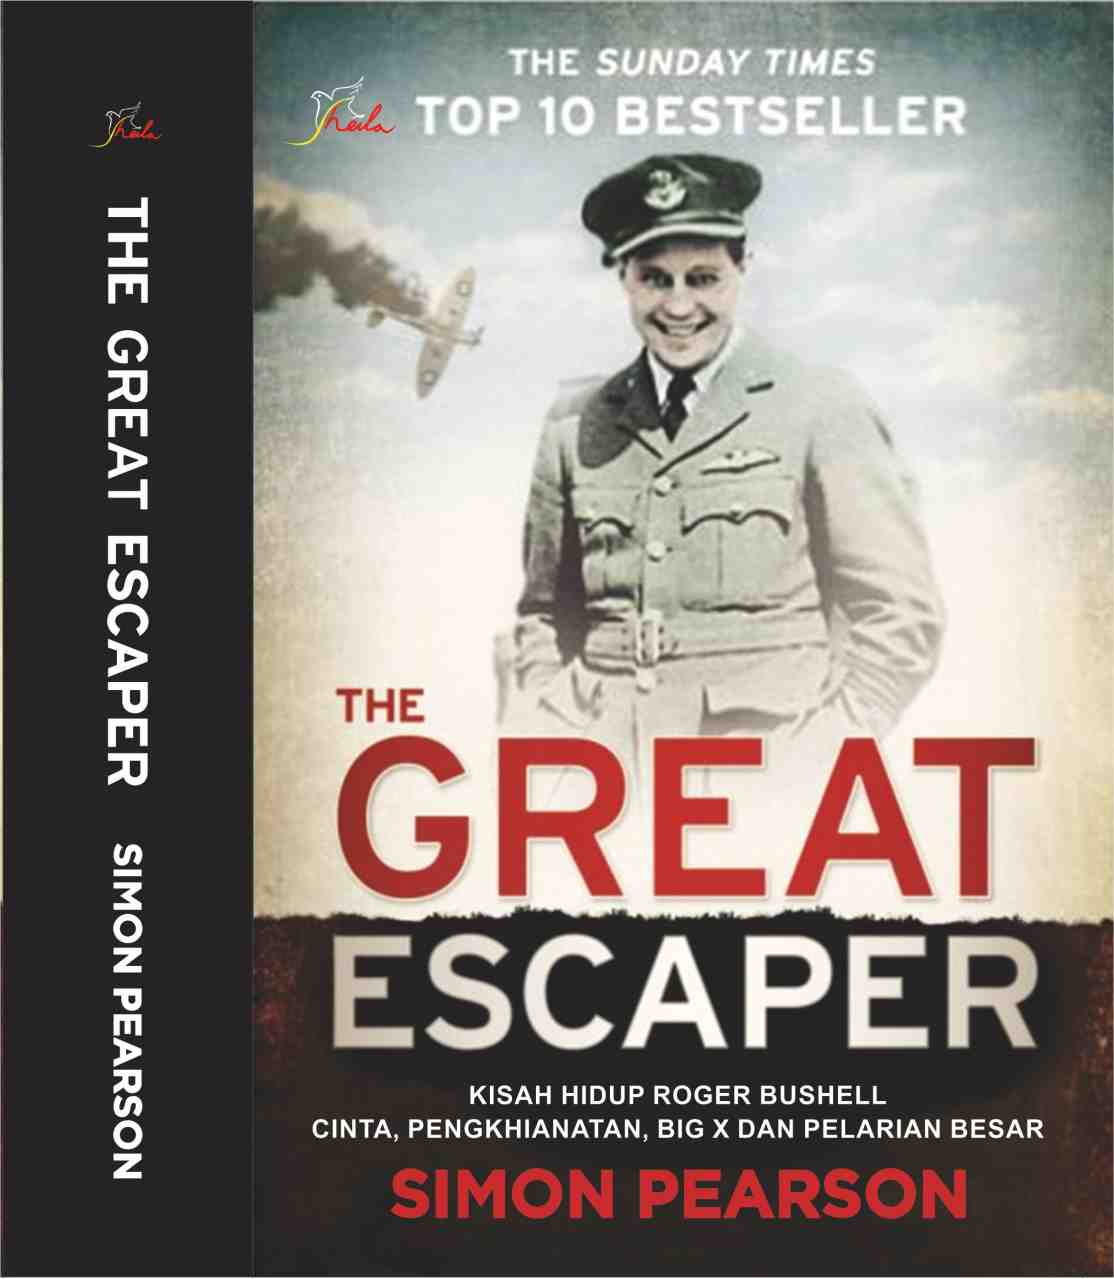 The Great Escaper: Kisah Hidup Roger Bushell: Cinta, Pengkhianatan, Big X dan Pelarian Besar